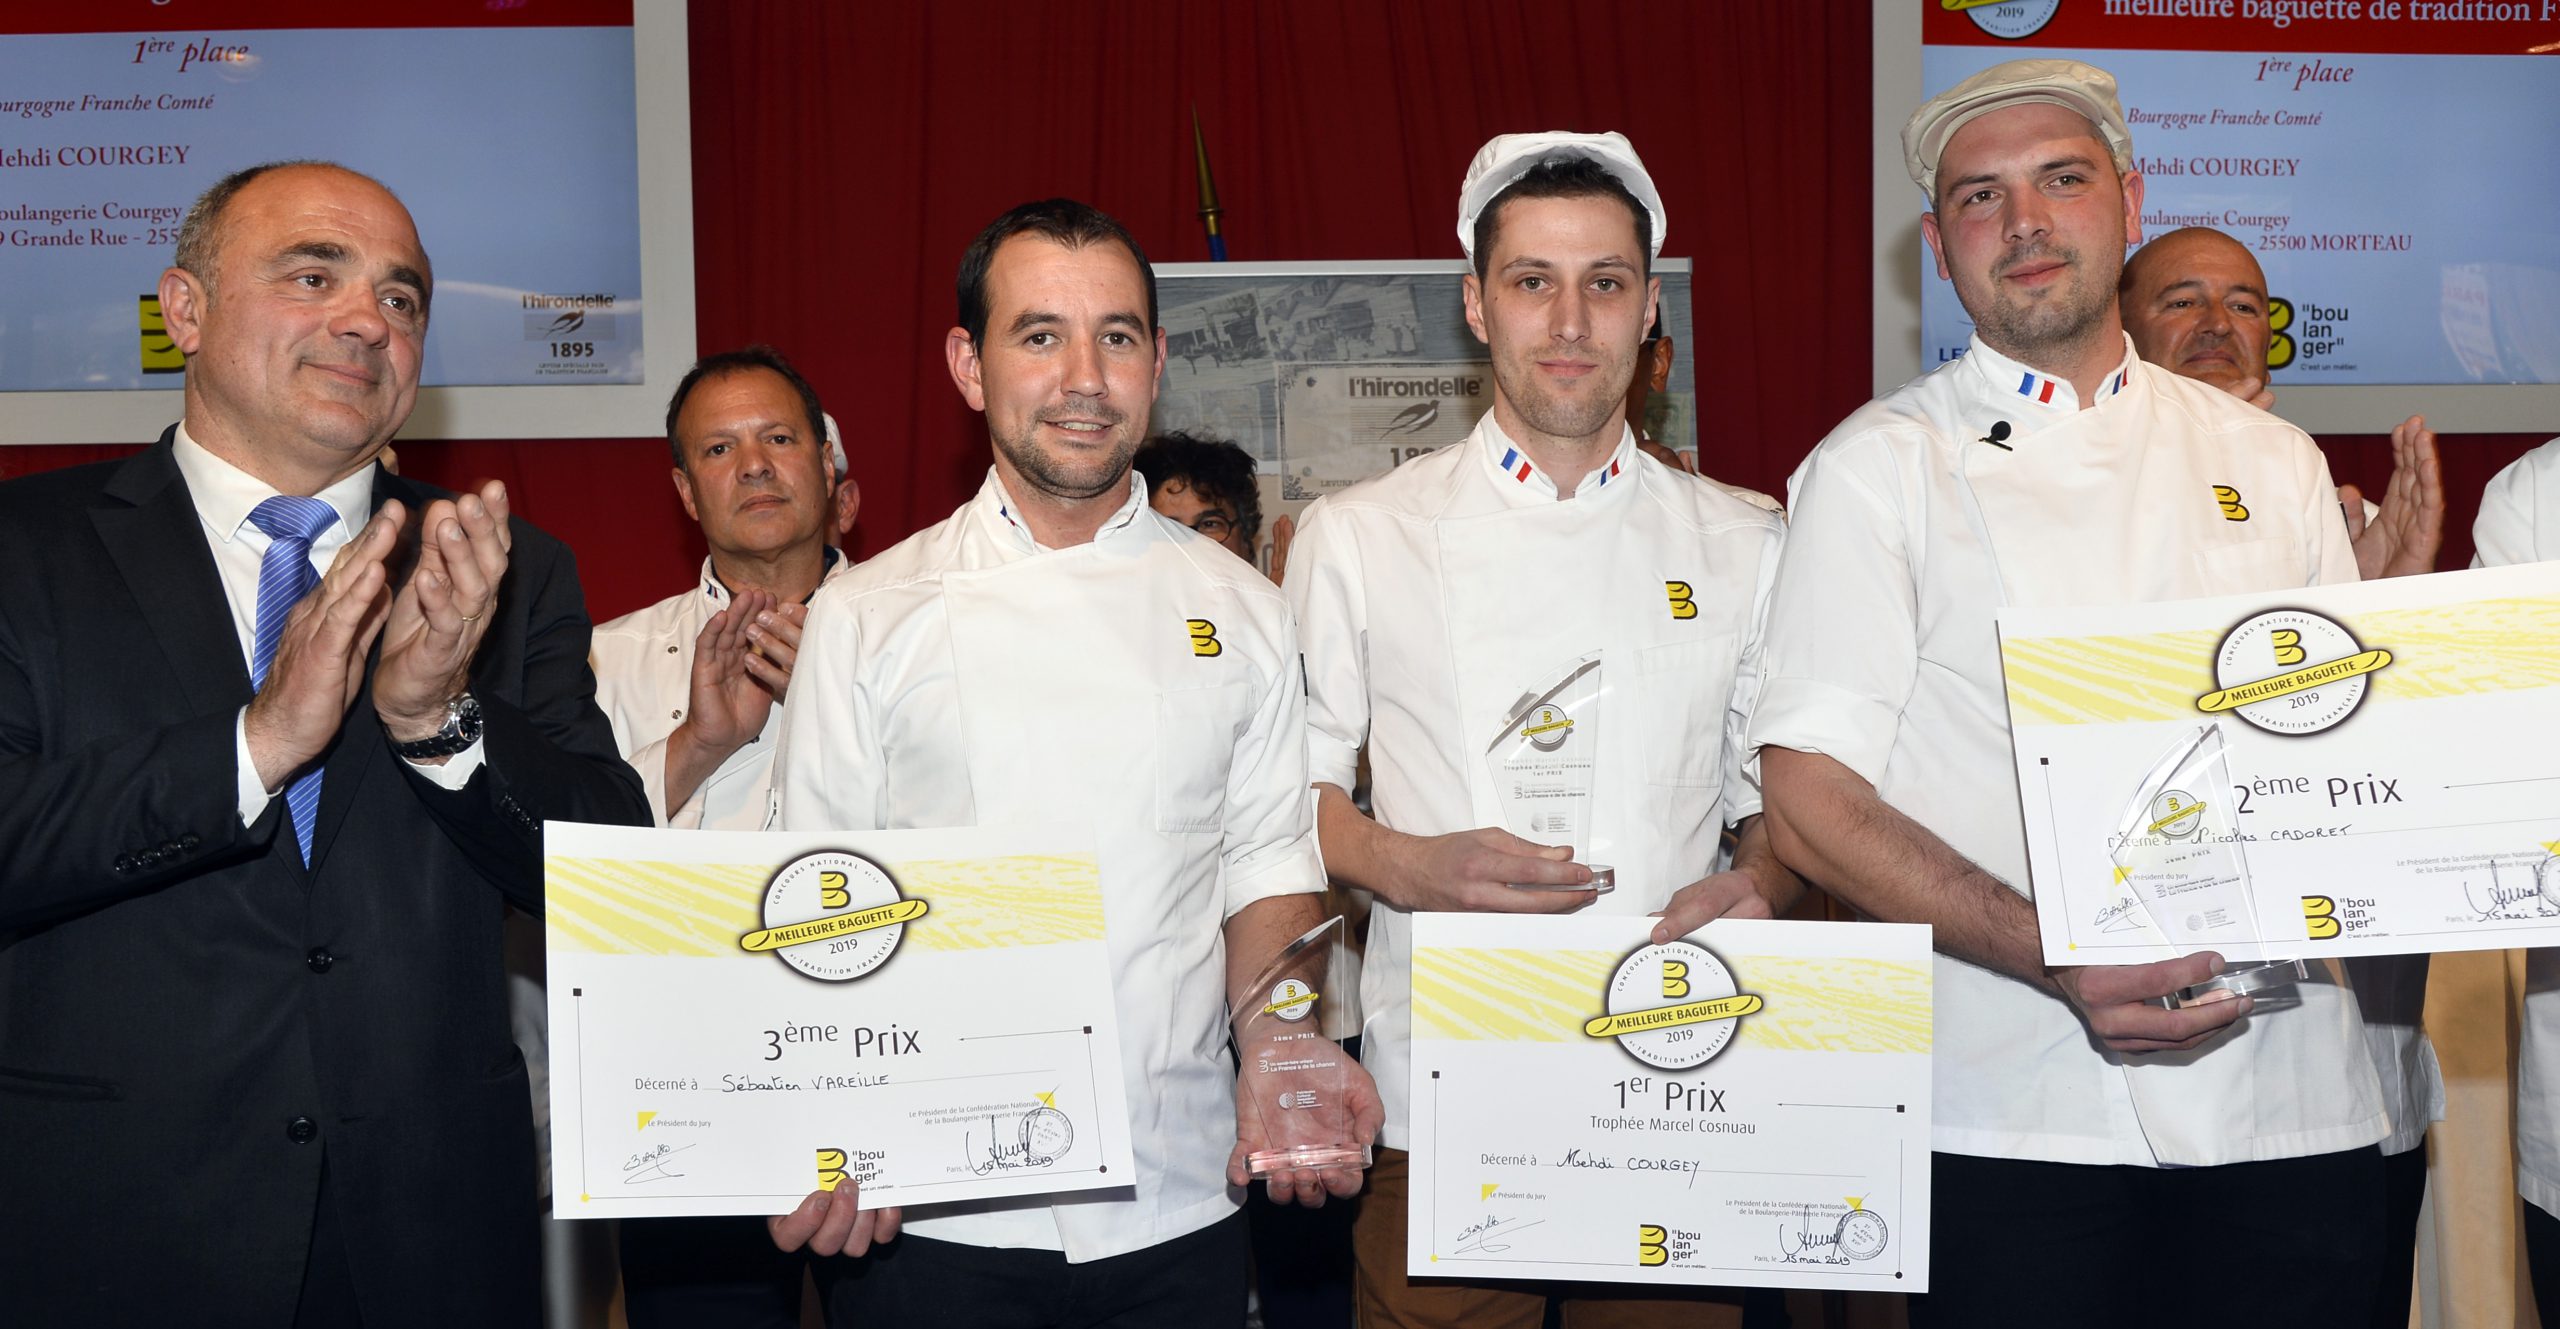 Concours national de la meilleure Baguette de Tradition française, les résultats…